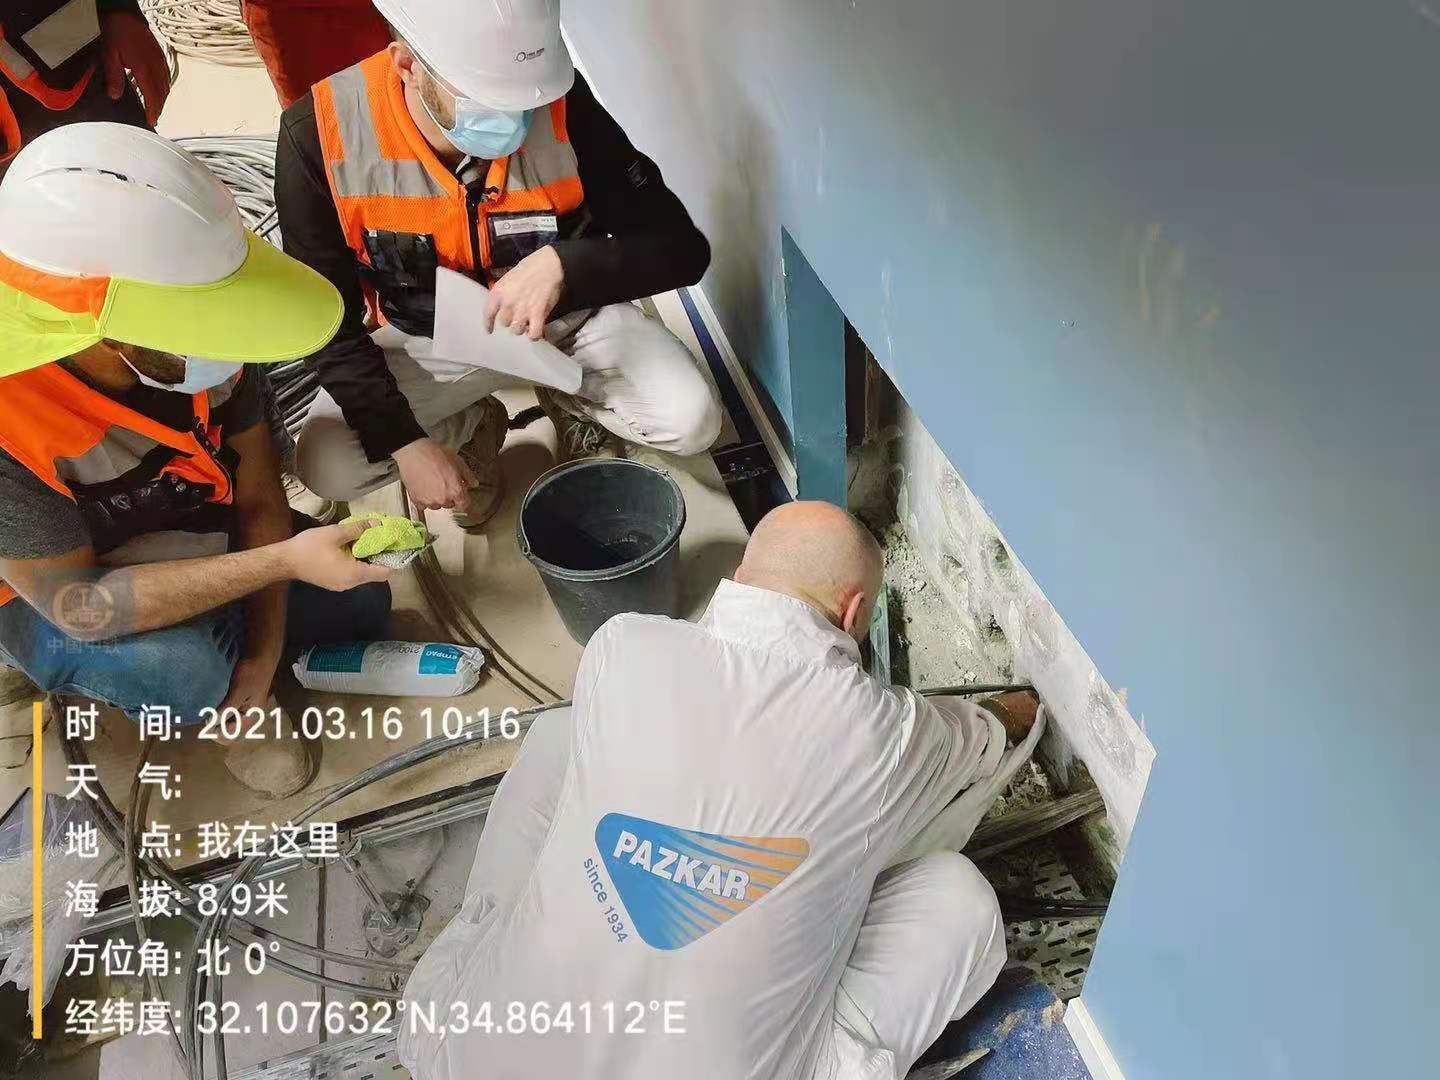 远境劳务浙江0费用出国打工奶粉厂质检员工作轻松